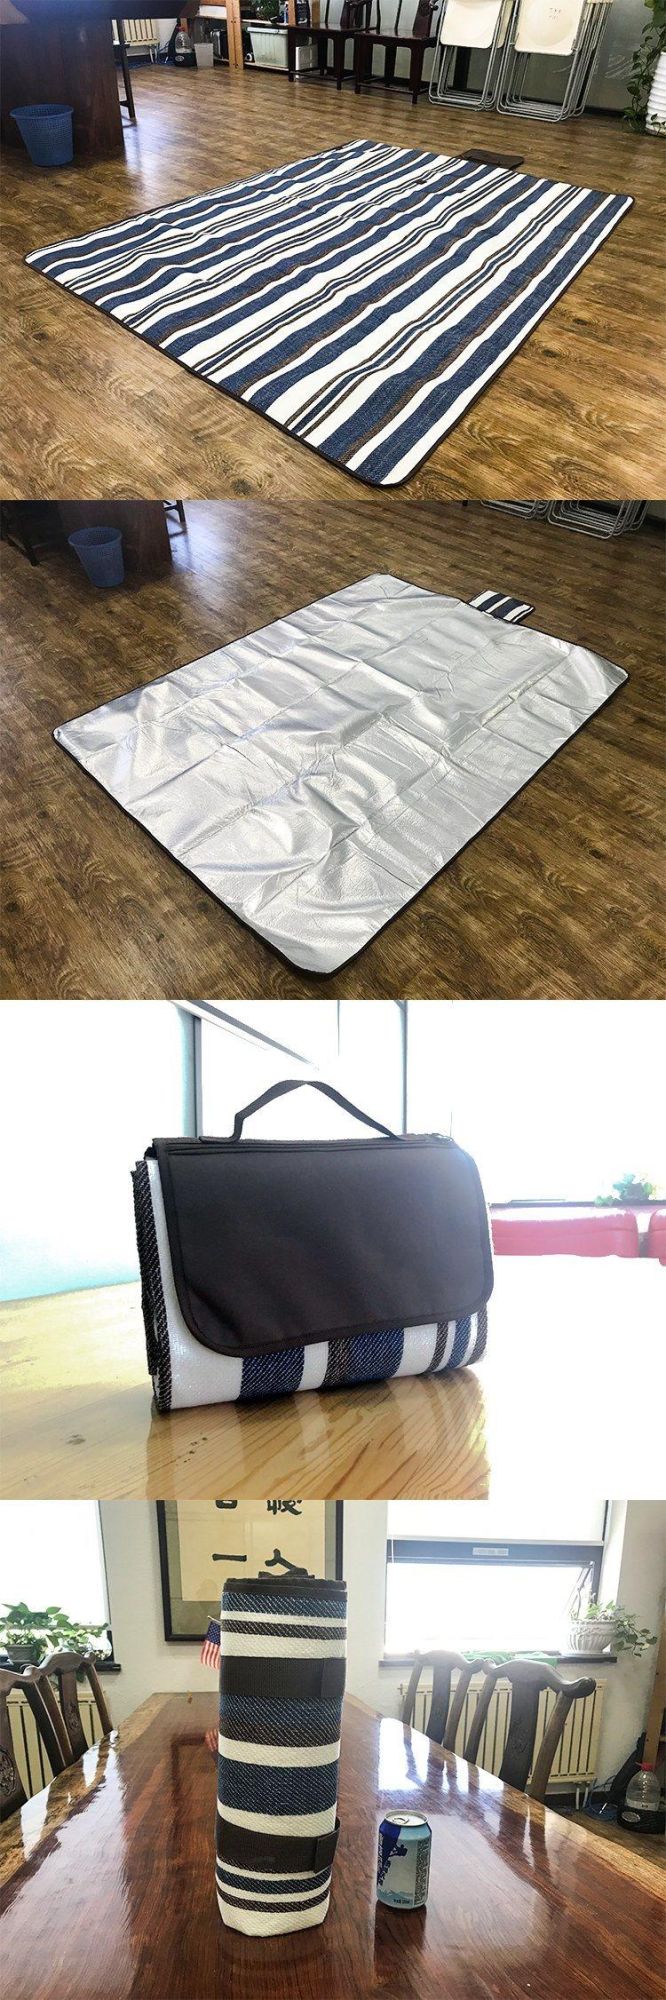 Wholesale Waterproof Camping Picnic Blanket Ultrasonic Camping Blanket Outdoor Blanket